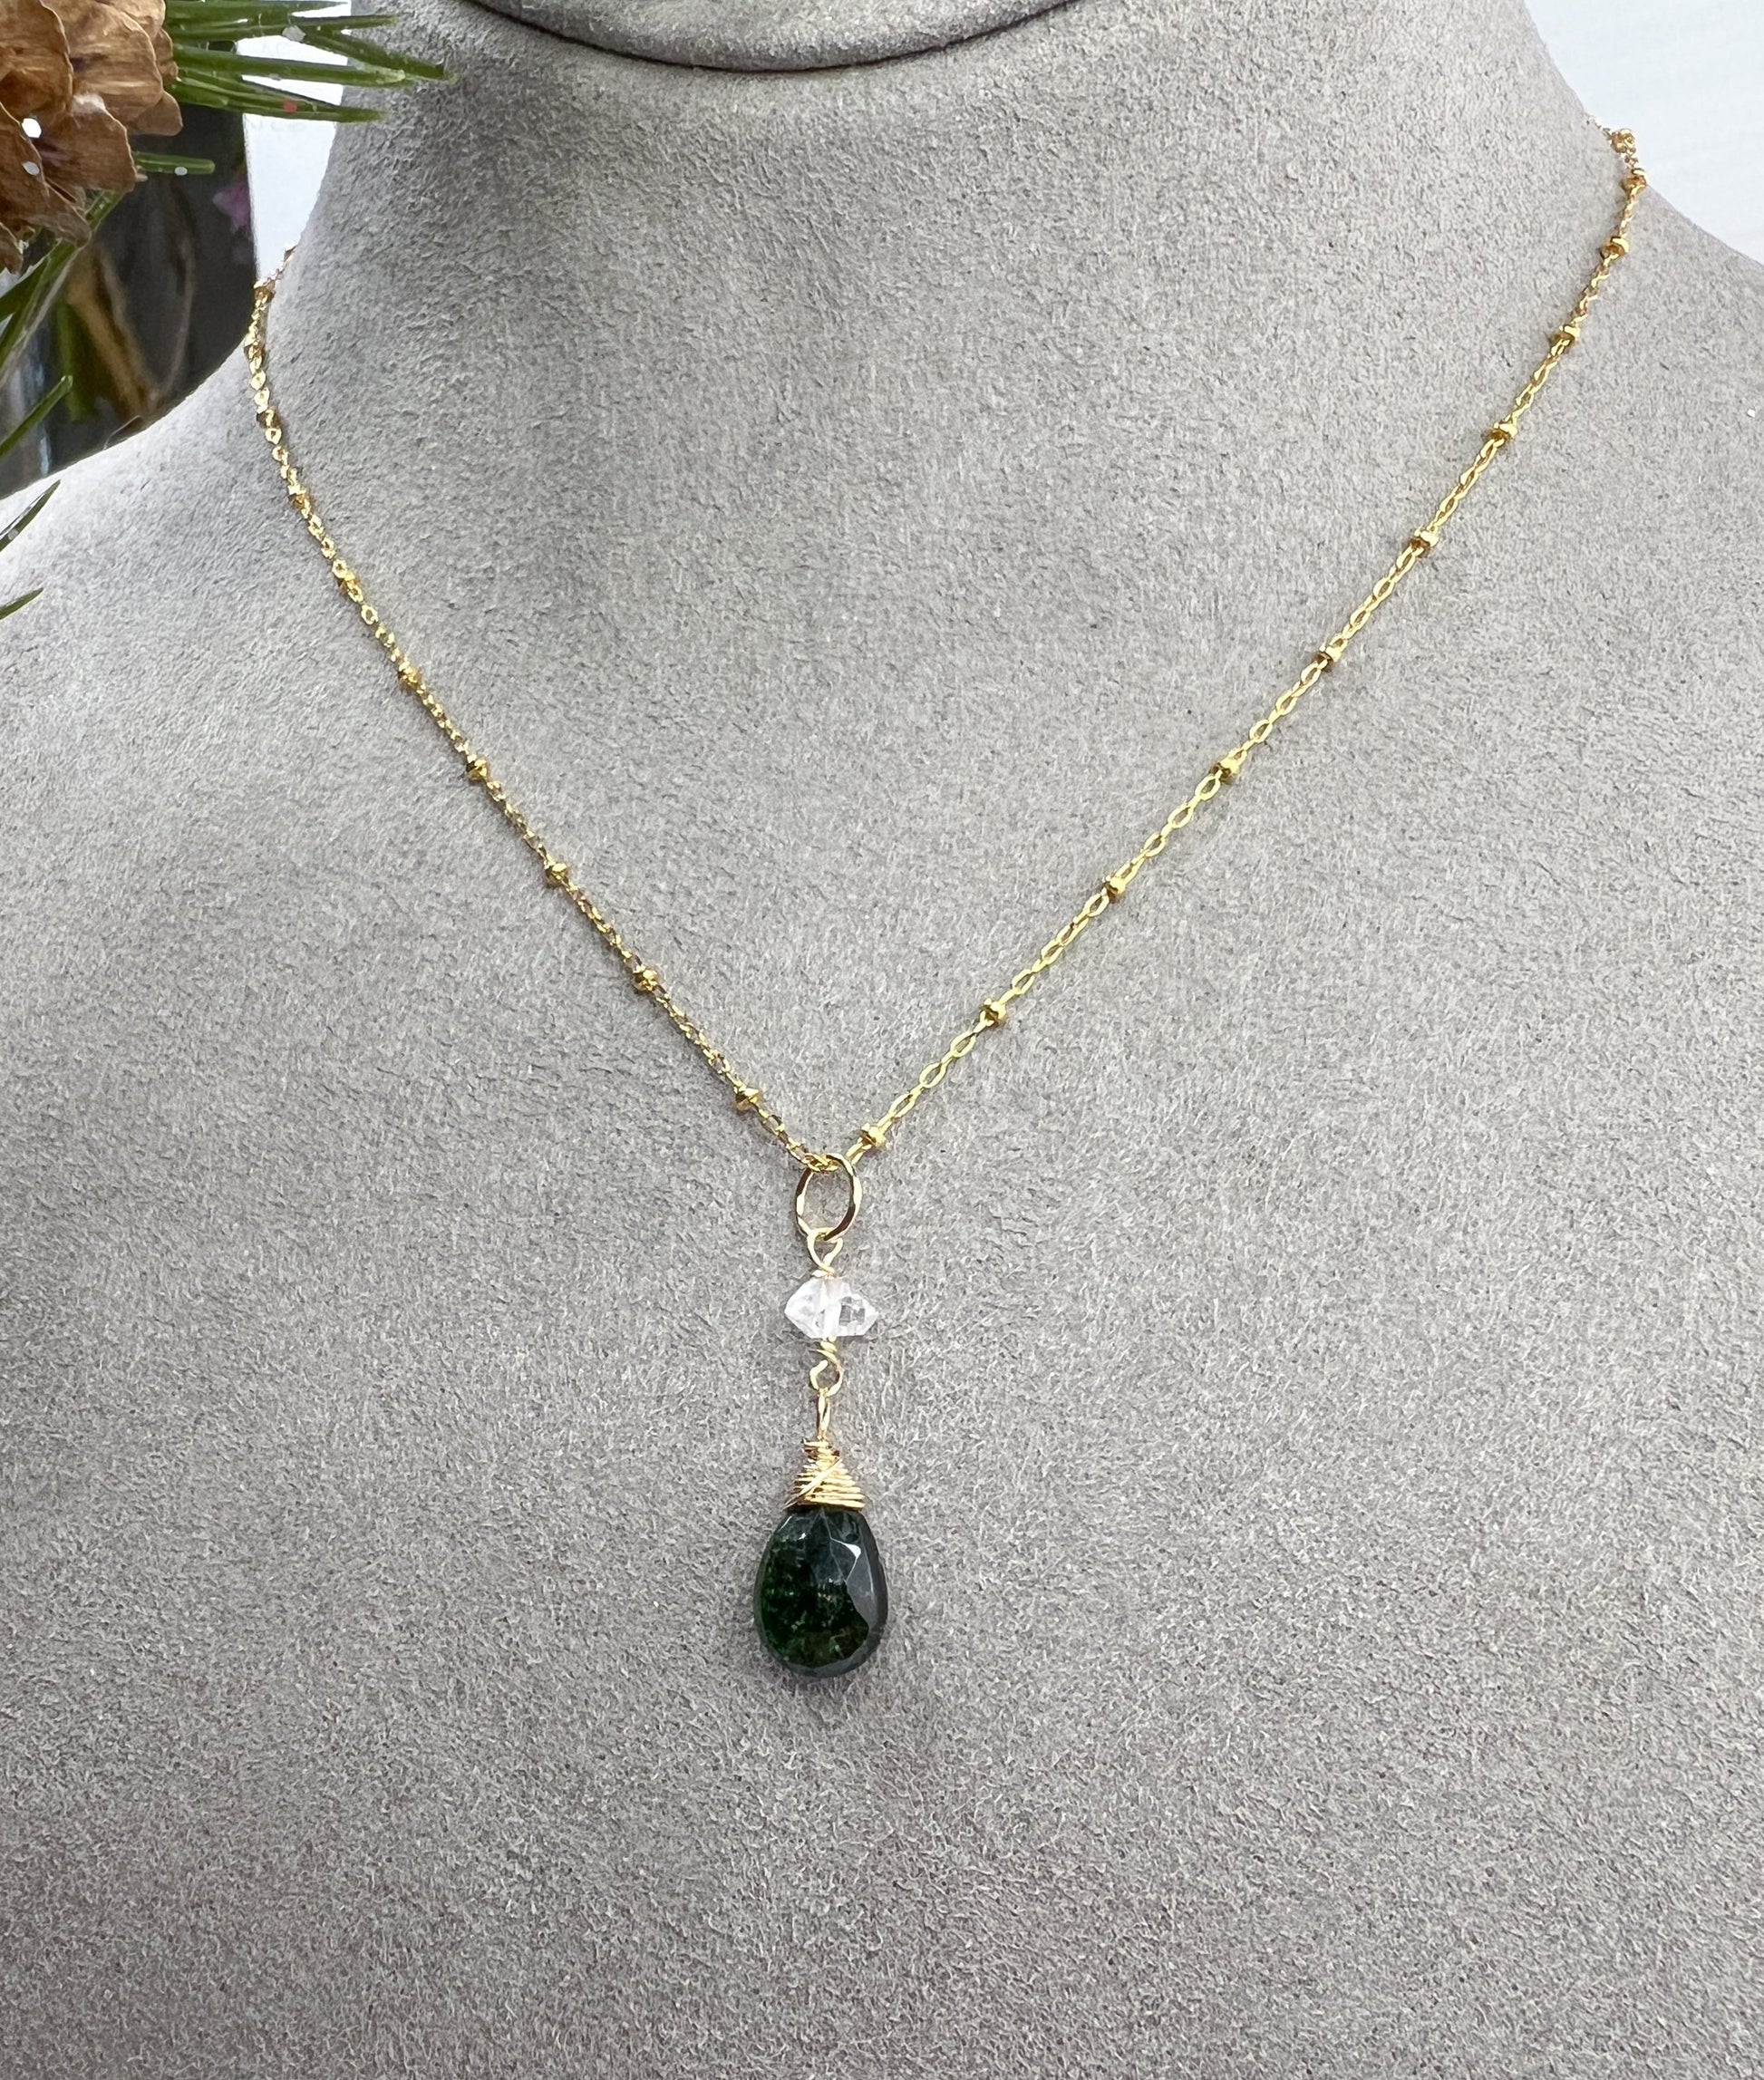 Green Tourmaline Necklace & Earrings